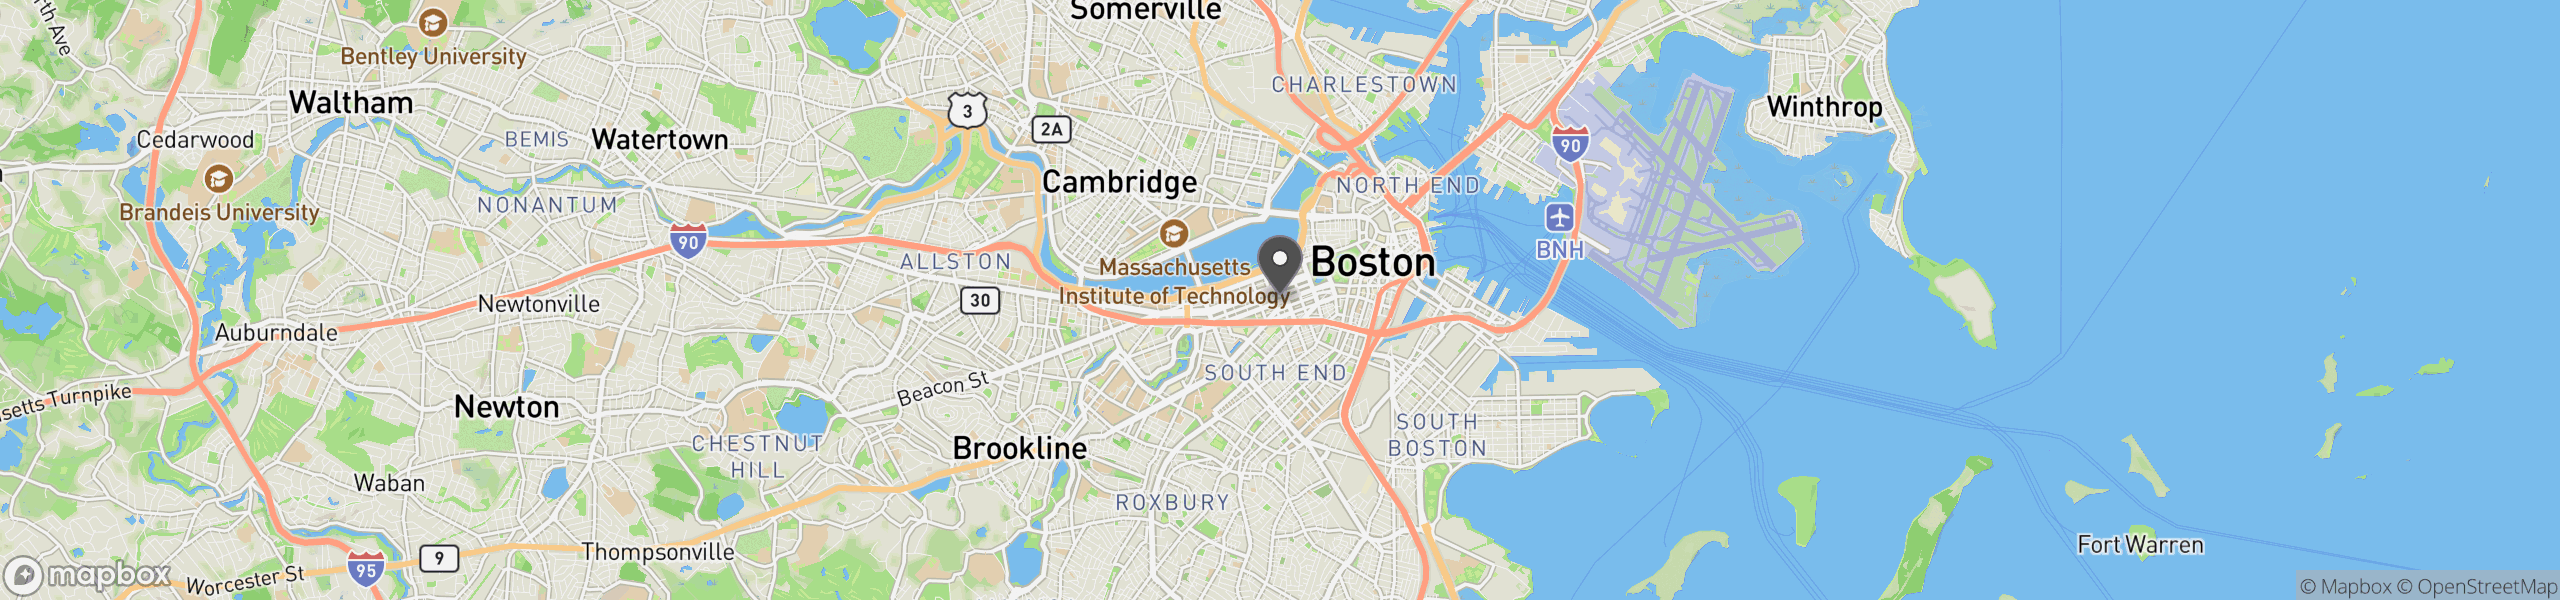 Boston, MA 02116